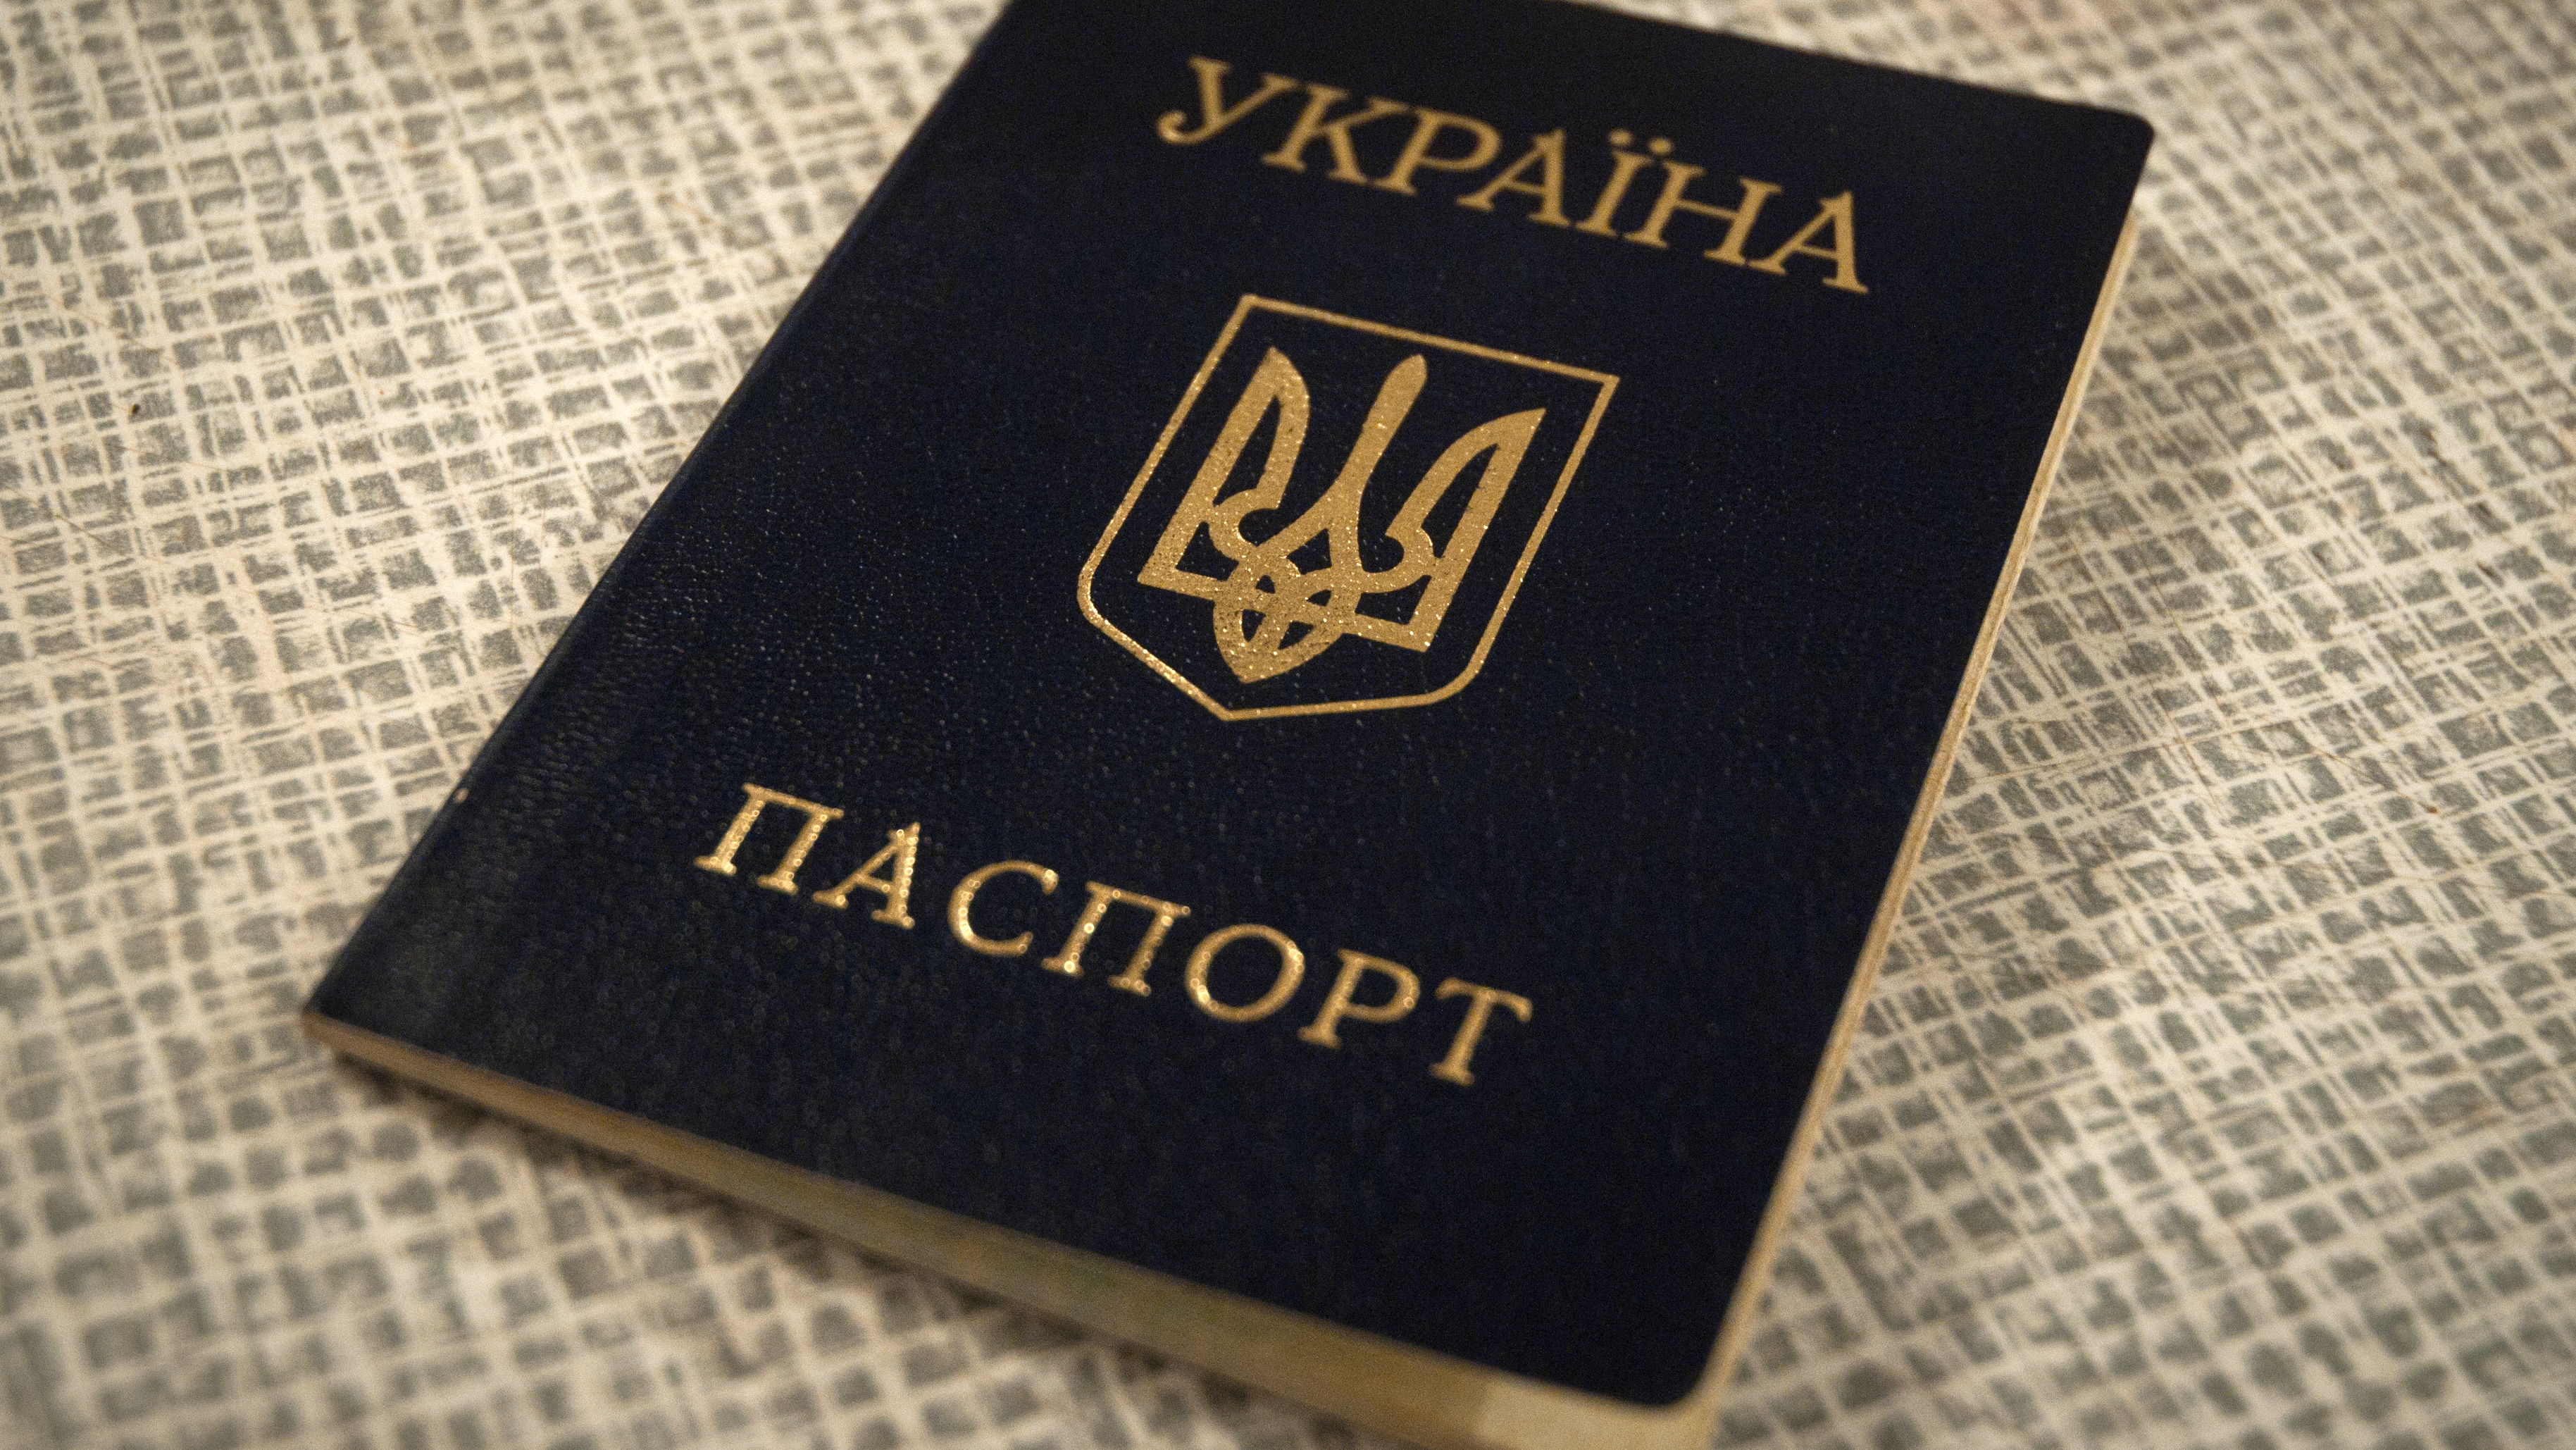 Karta Polaka dla obywatela Ukrainy będzie łatwiejsza do zdobycia